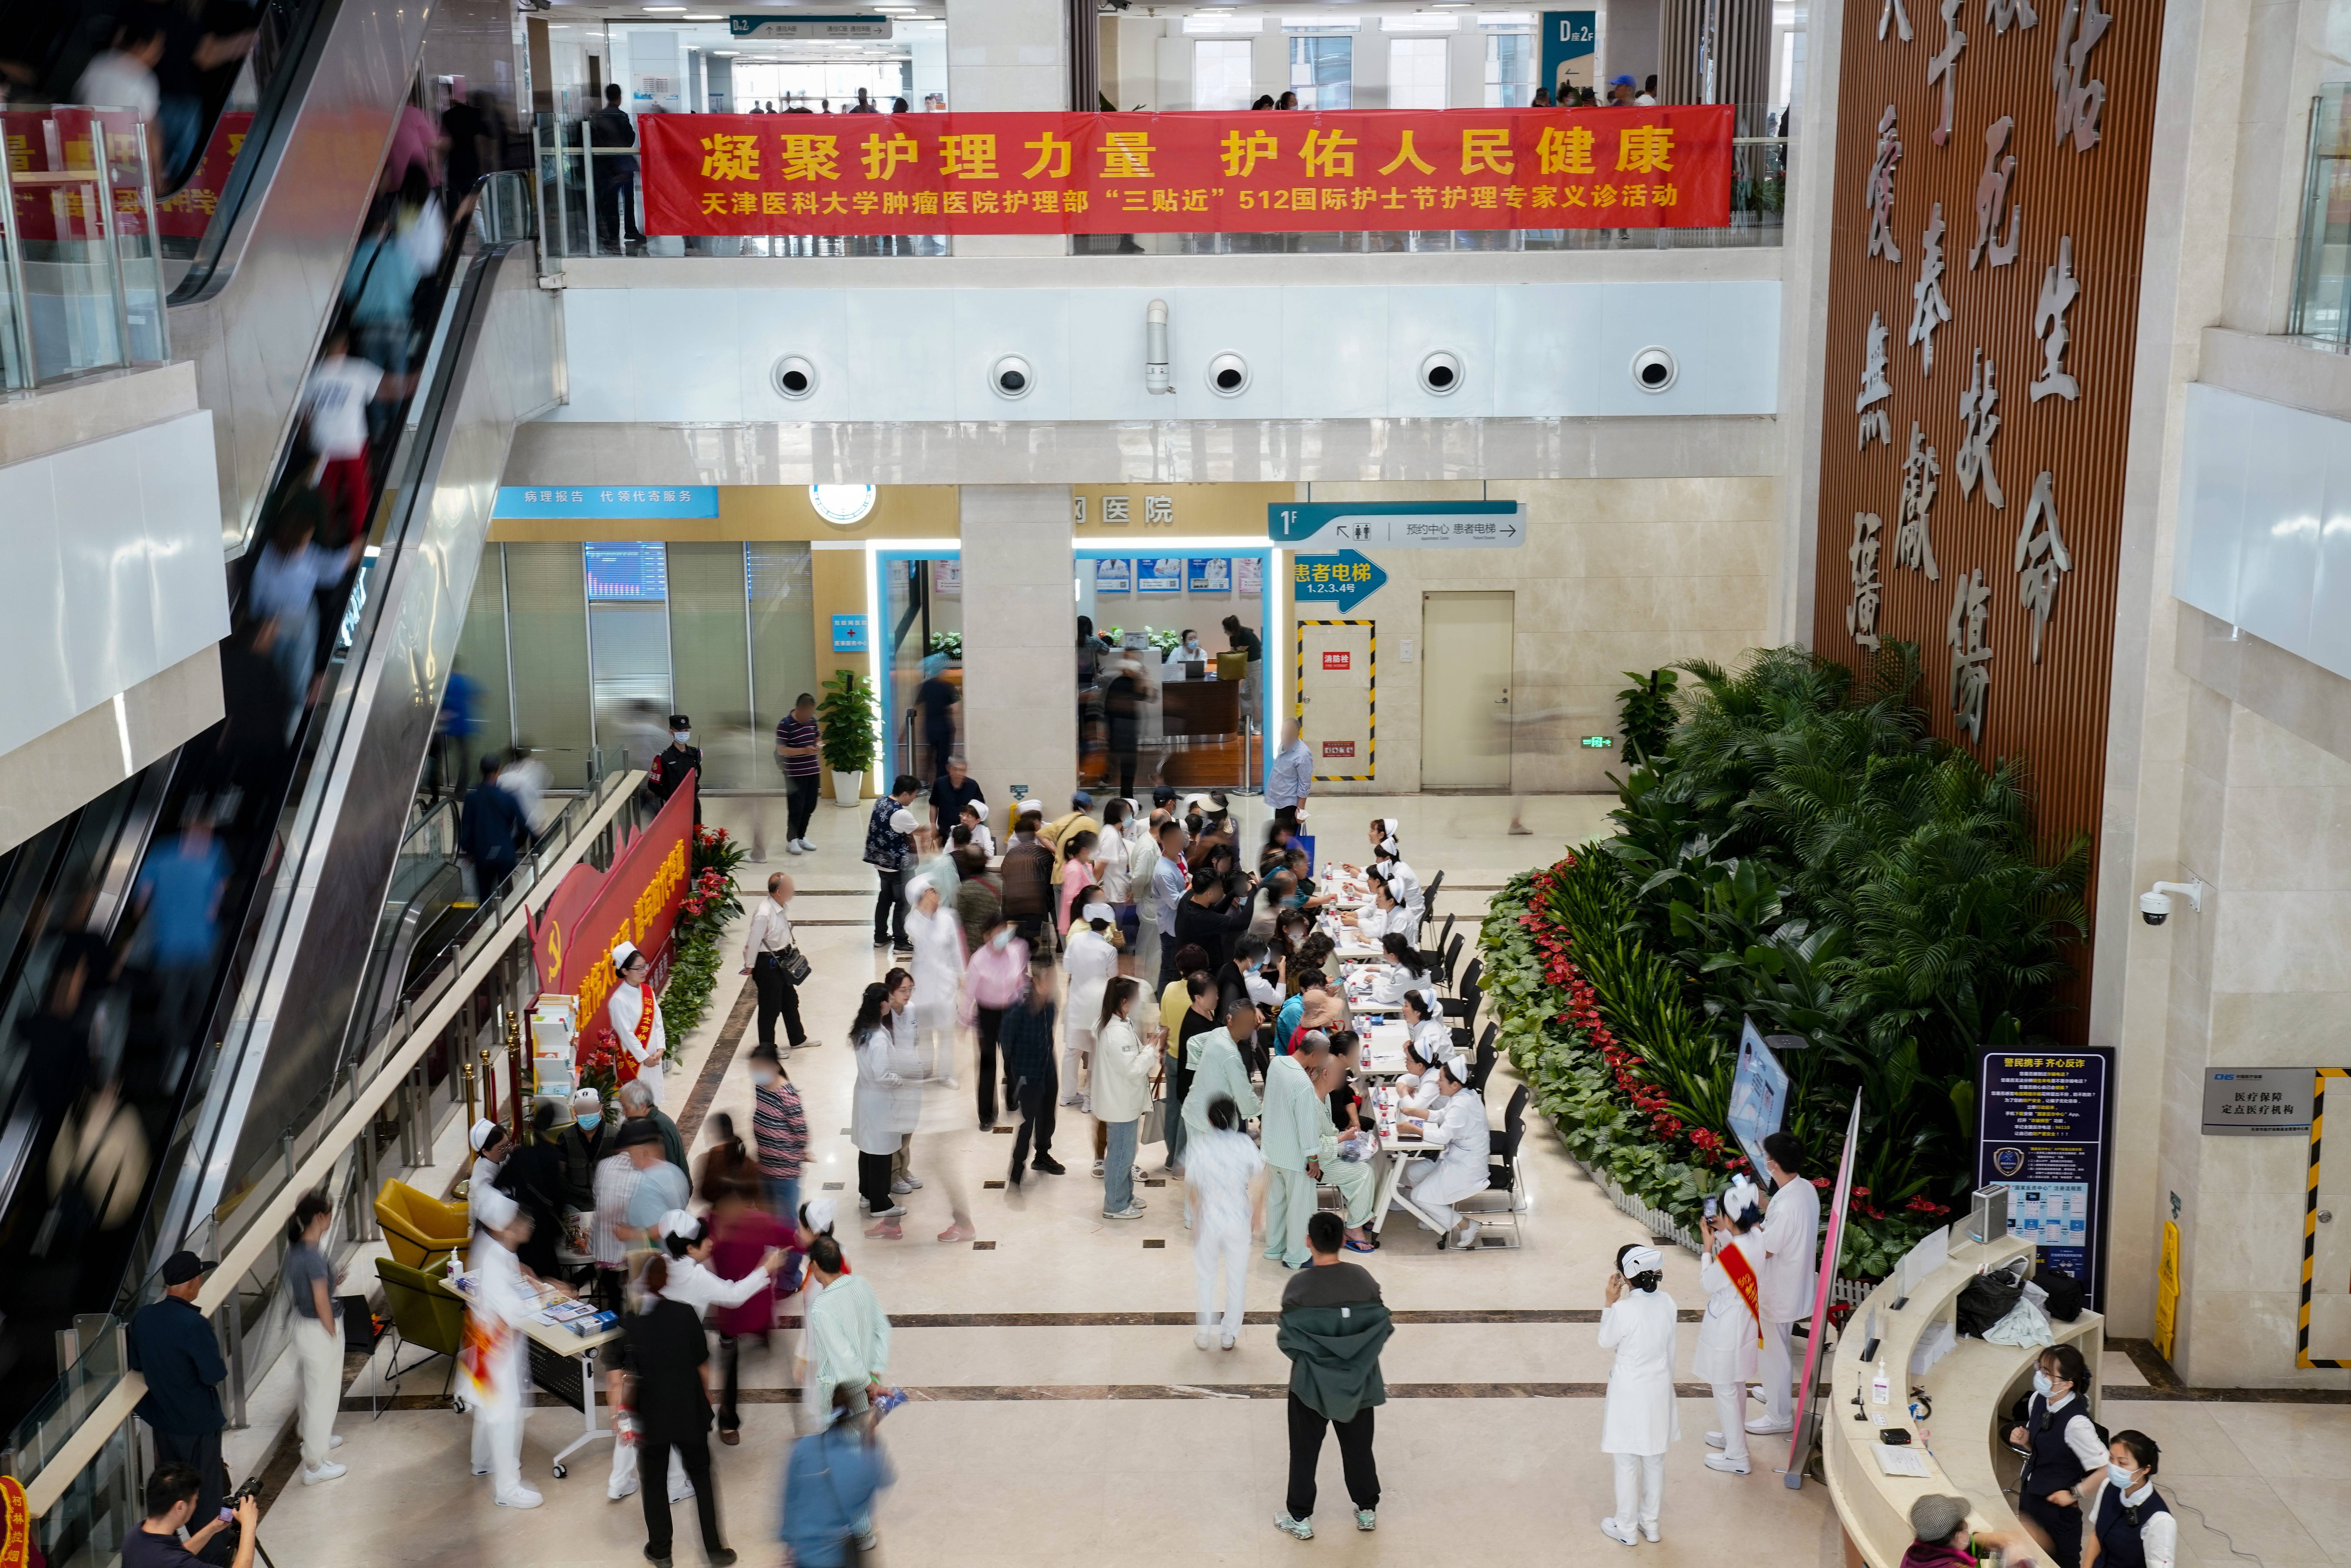 天津医科大学肿瘤医院开展512国际护士节护理科普活动周系列公益